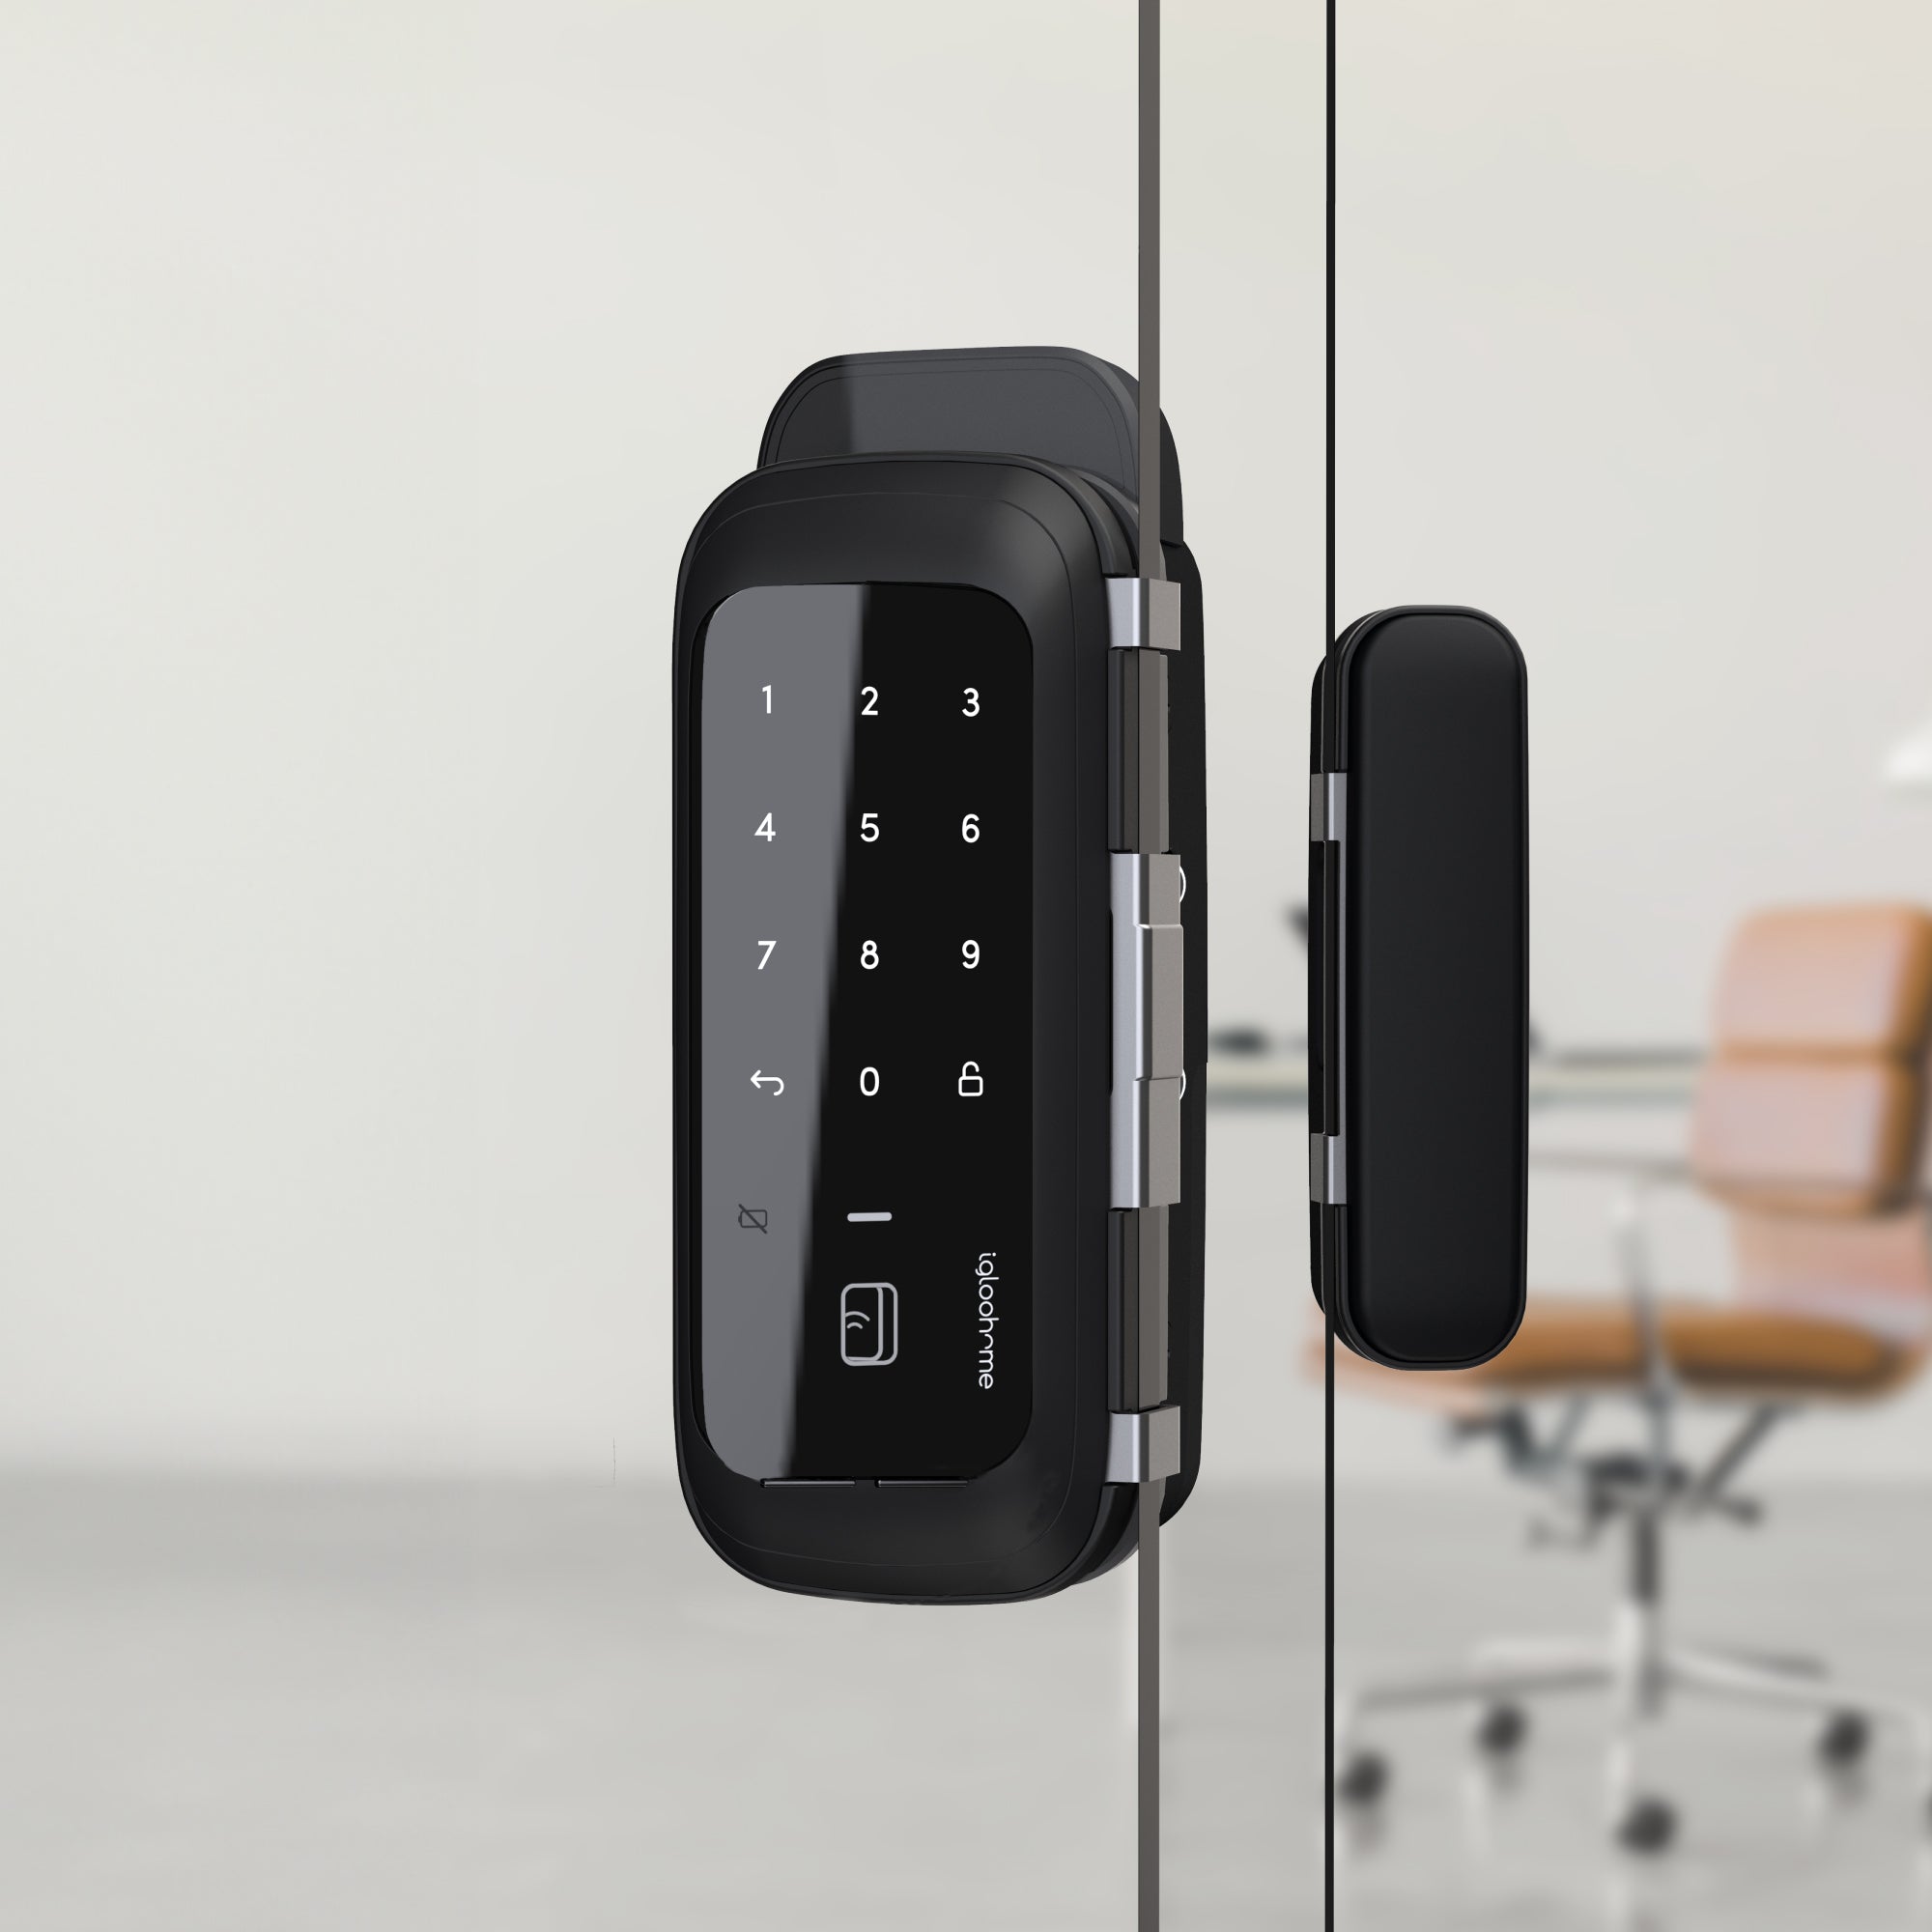 Rim Lock Glass Doors. Cerradura inteligente para oficina con Tarjeta, Bluetooth y WiFi, vía app y Clave Numérica.